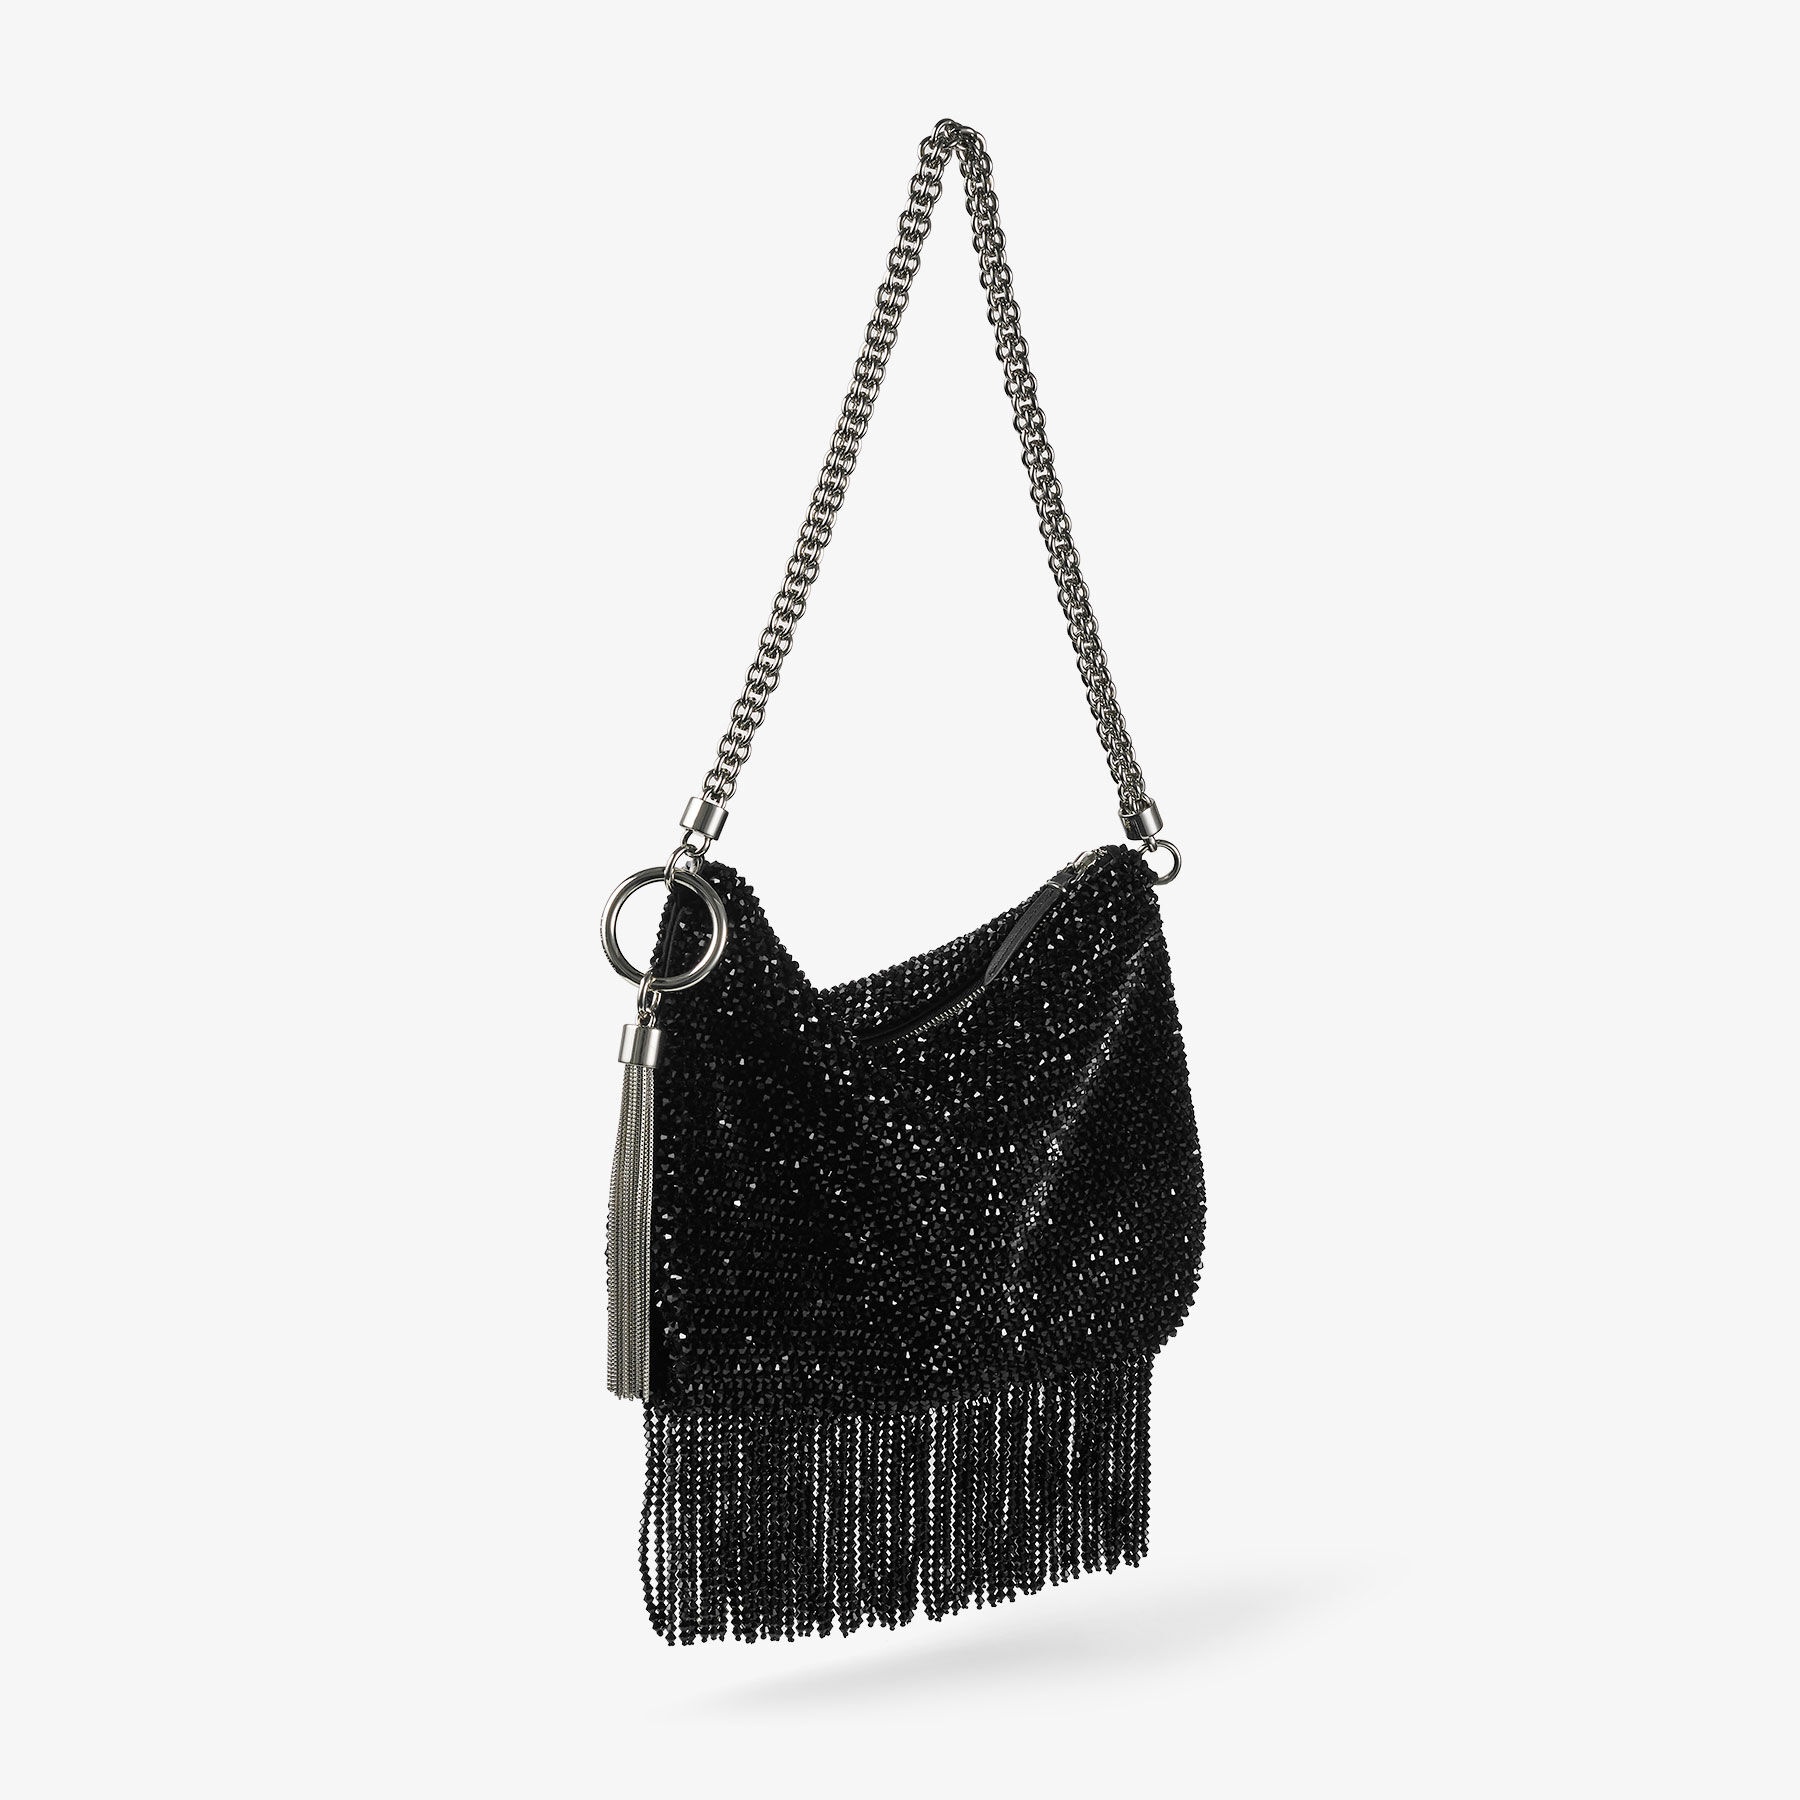 Callie  Shoulder
Black Satin Shoulder Bag with Crystal Fringe - 5